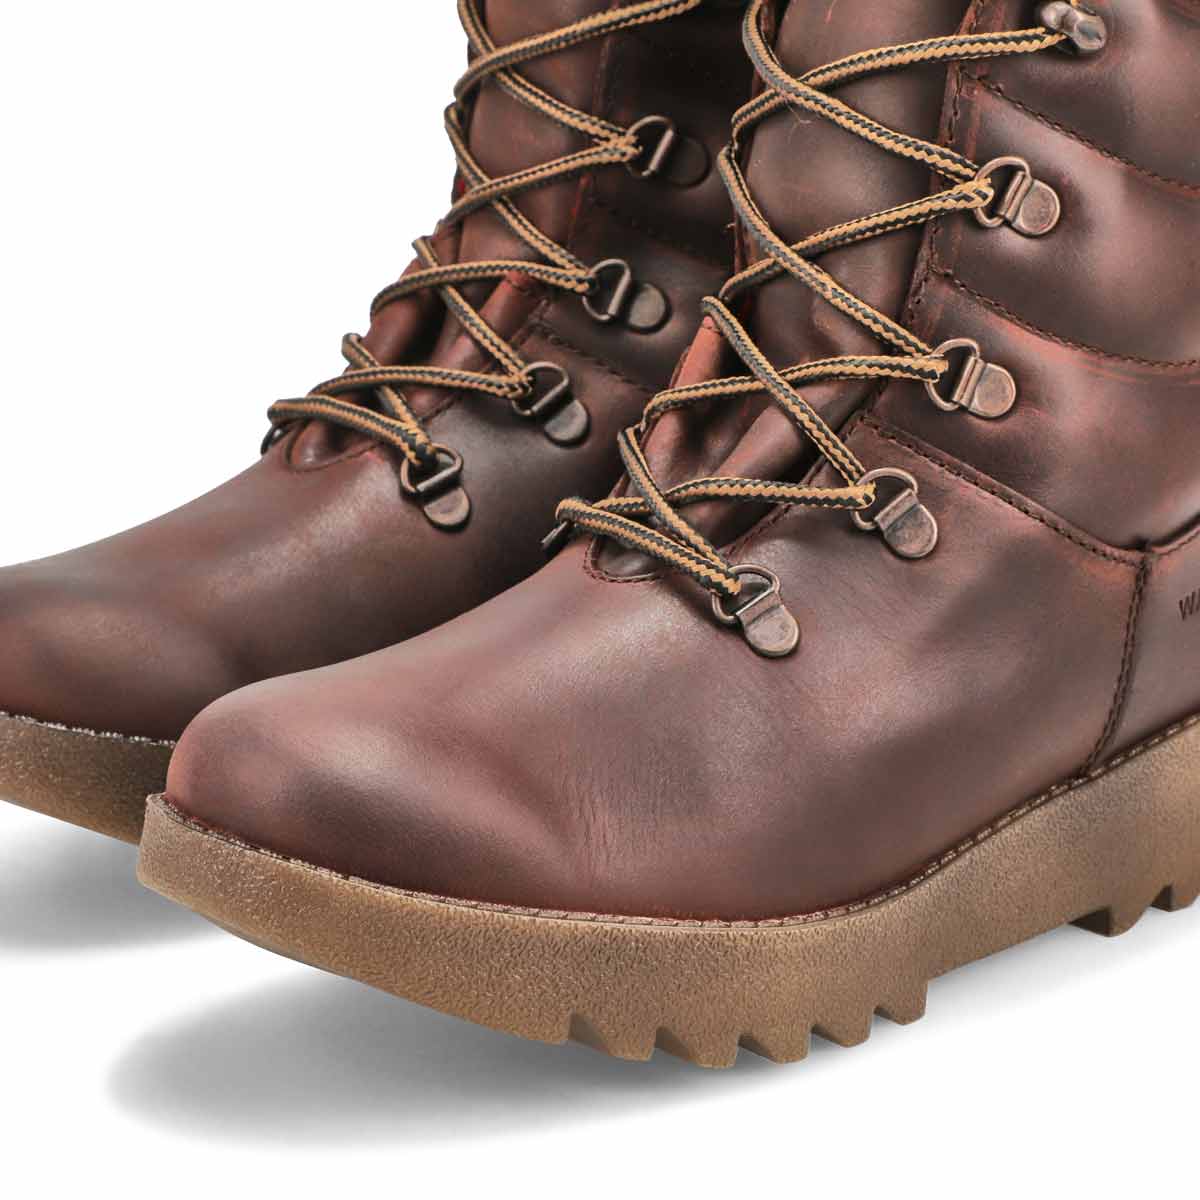 Women's 39068 ORIGINAL waterproof winter boots